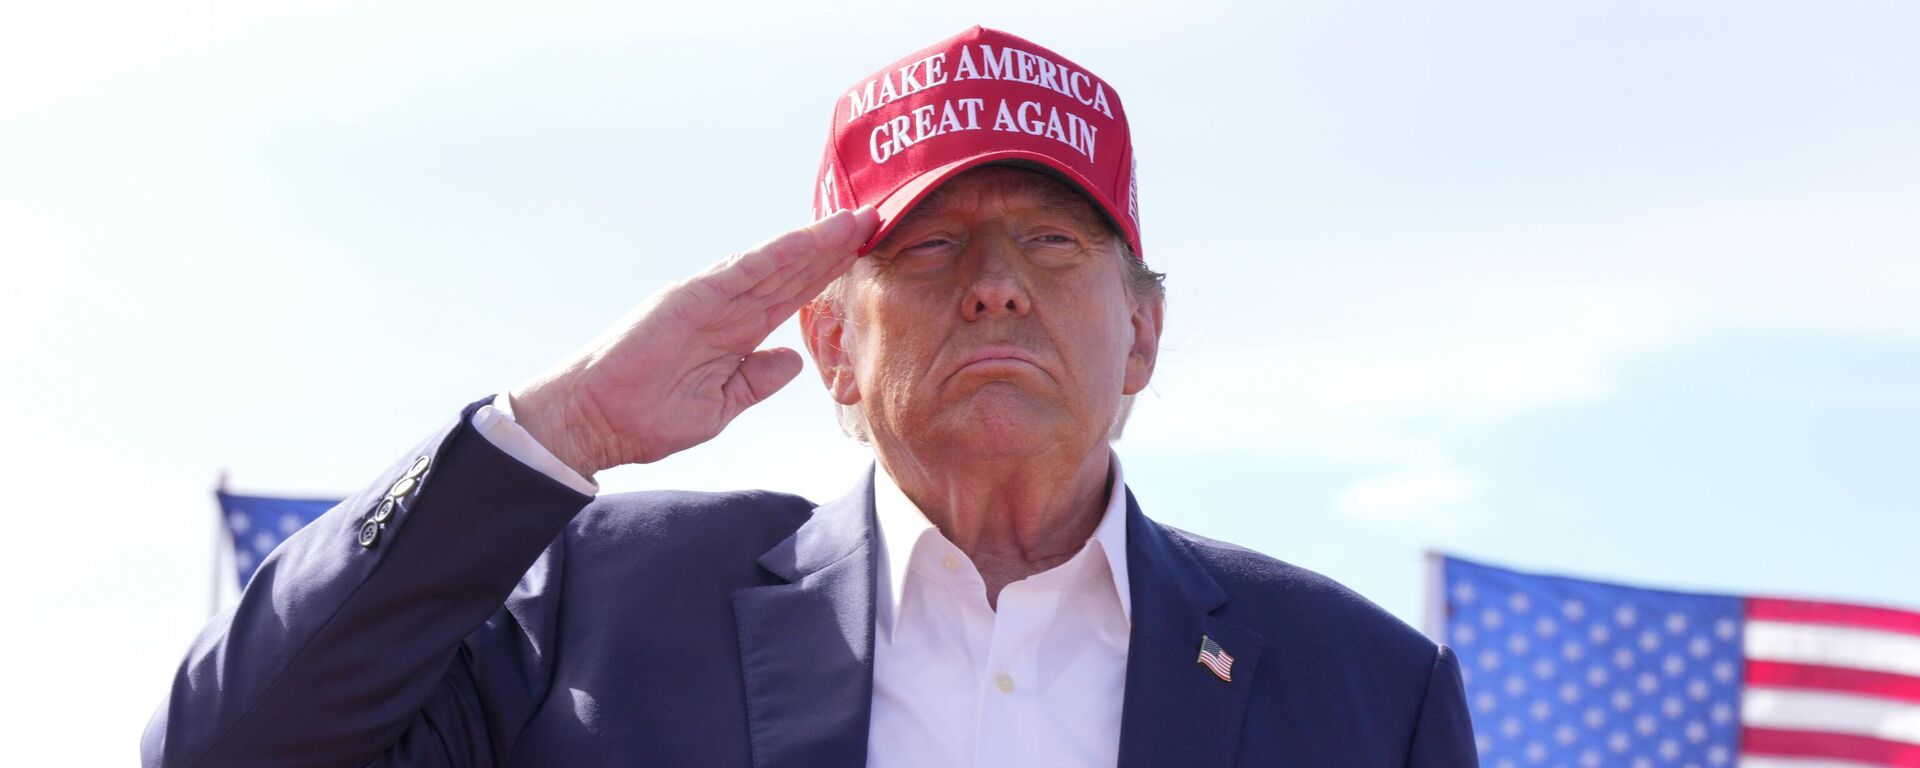 Donald Trump, candidato presidencial republicano y expresidente, saluda durante un acto de campaña el 16 de marzo de 2024, en Vandalia, Ohio  - Sputnik Mundo, 1920, 19.03.2024